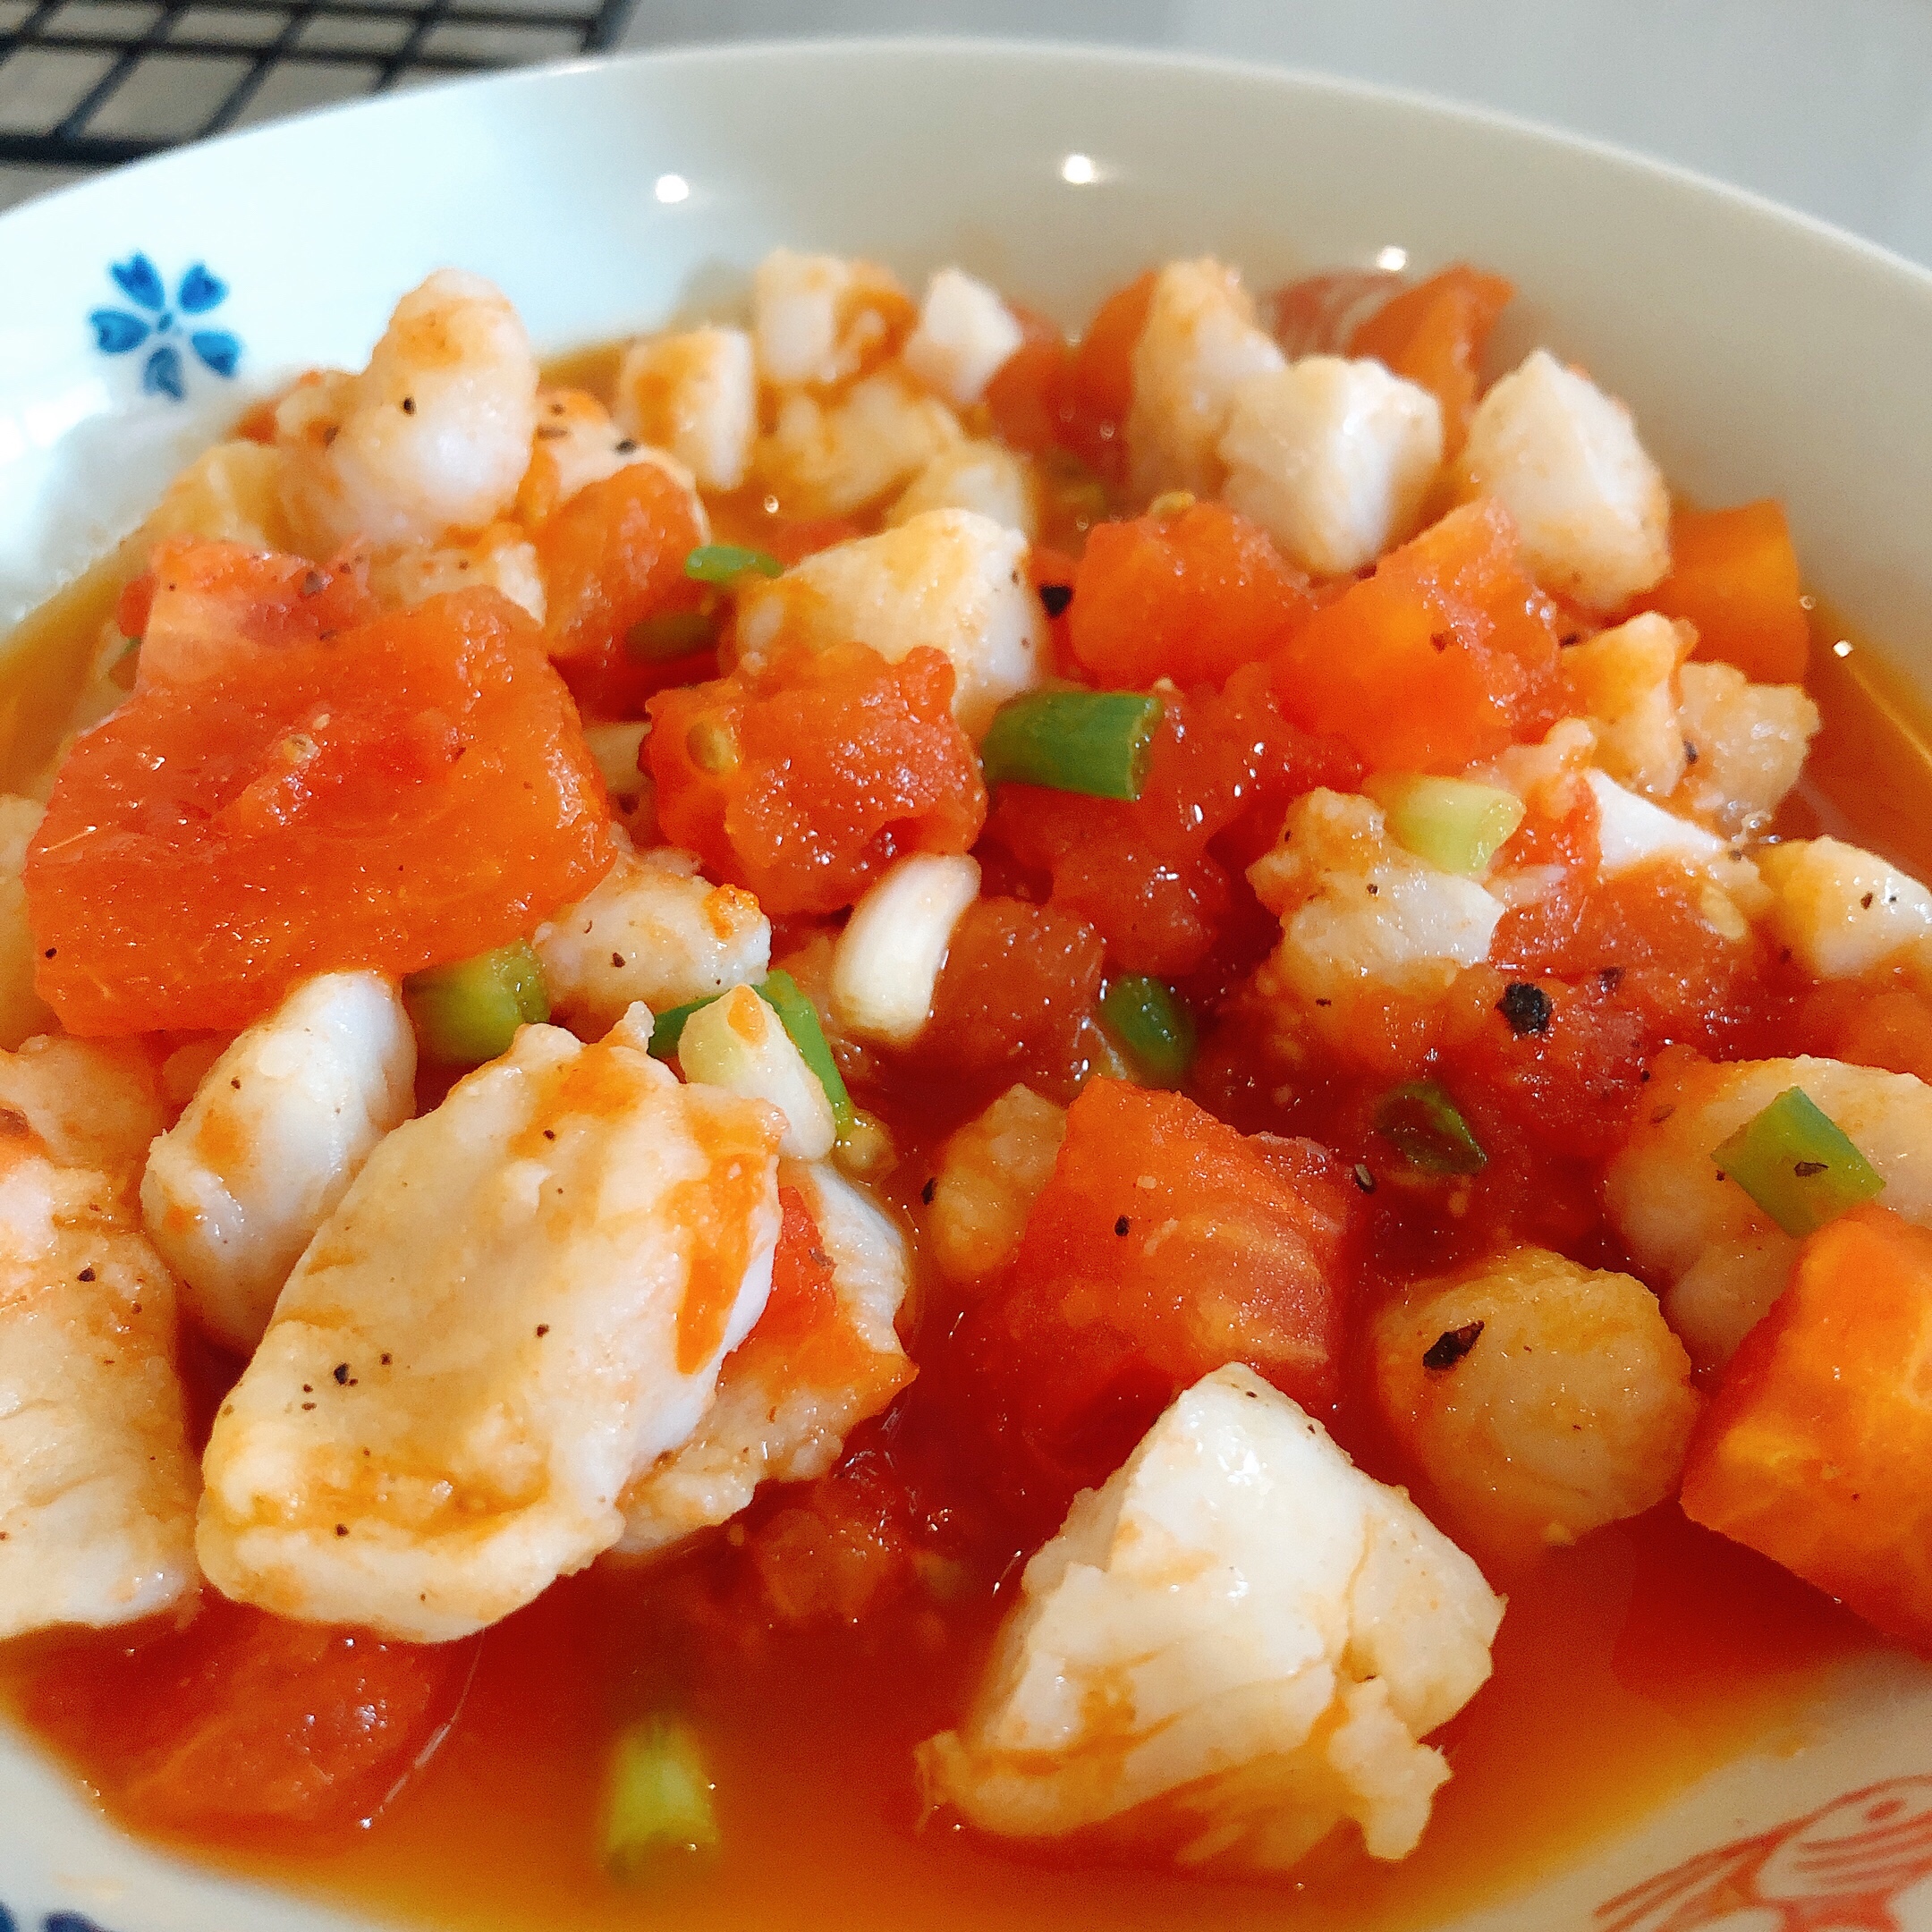 「减脂健康食谱」
好吃到舔盘的番茄巴沙鱼的做法